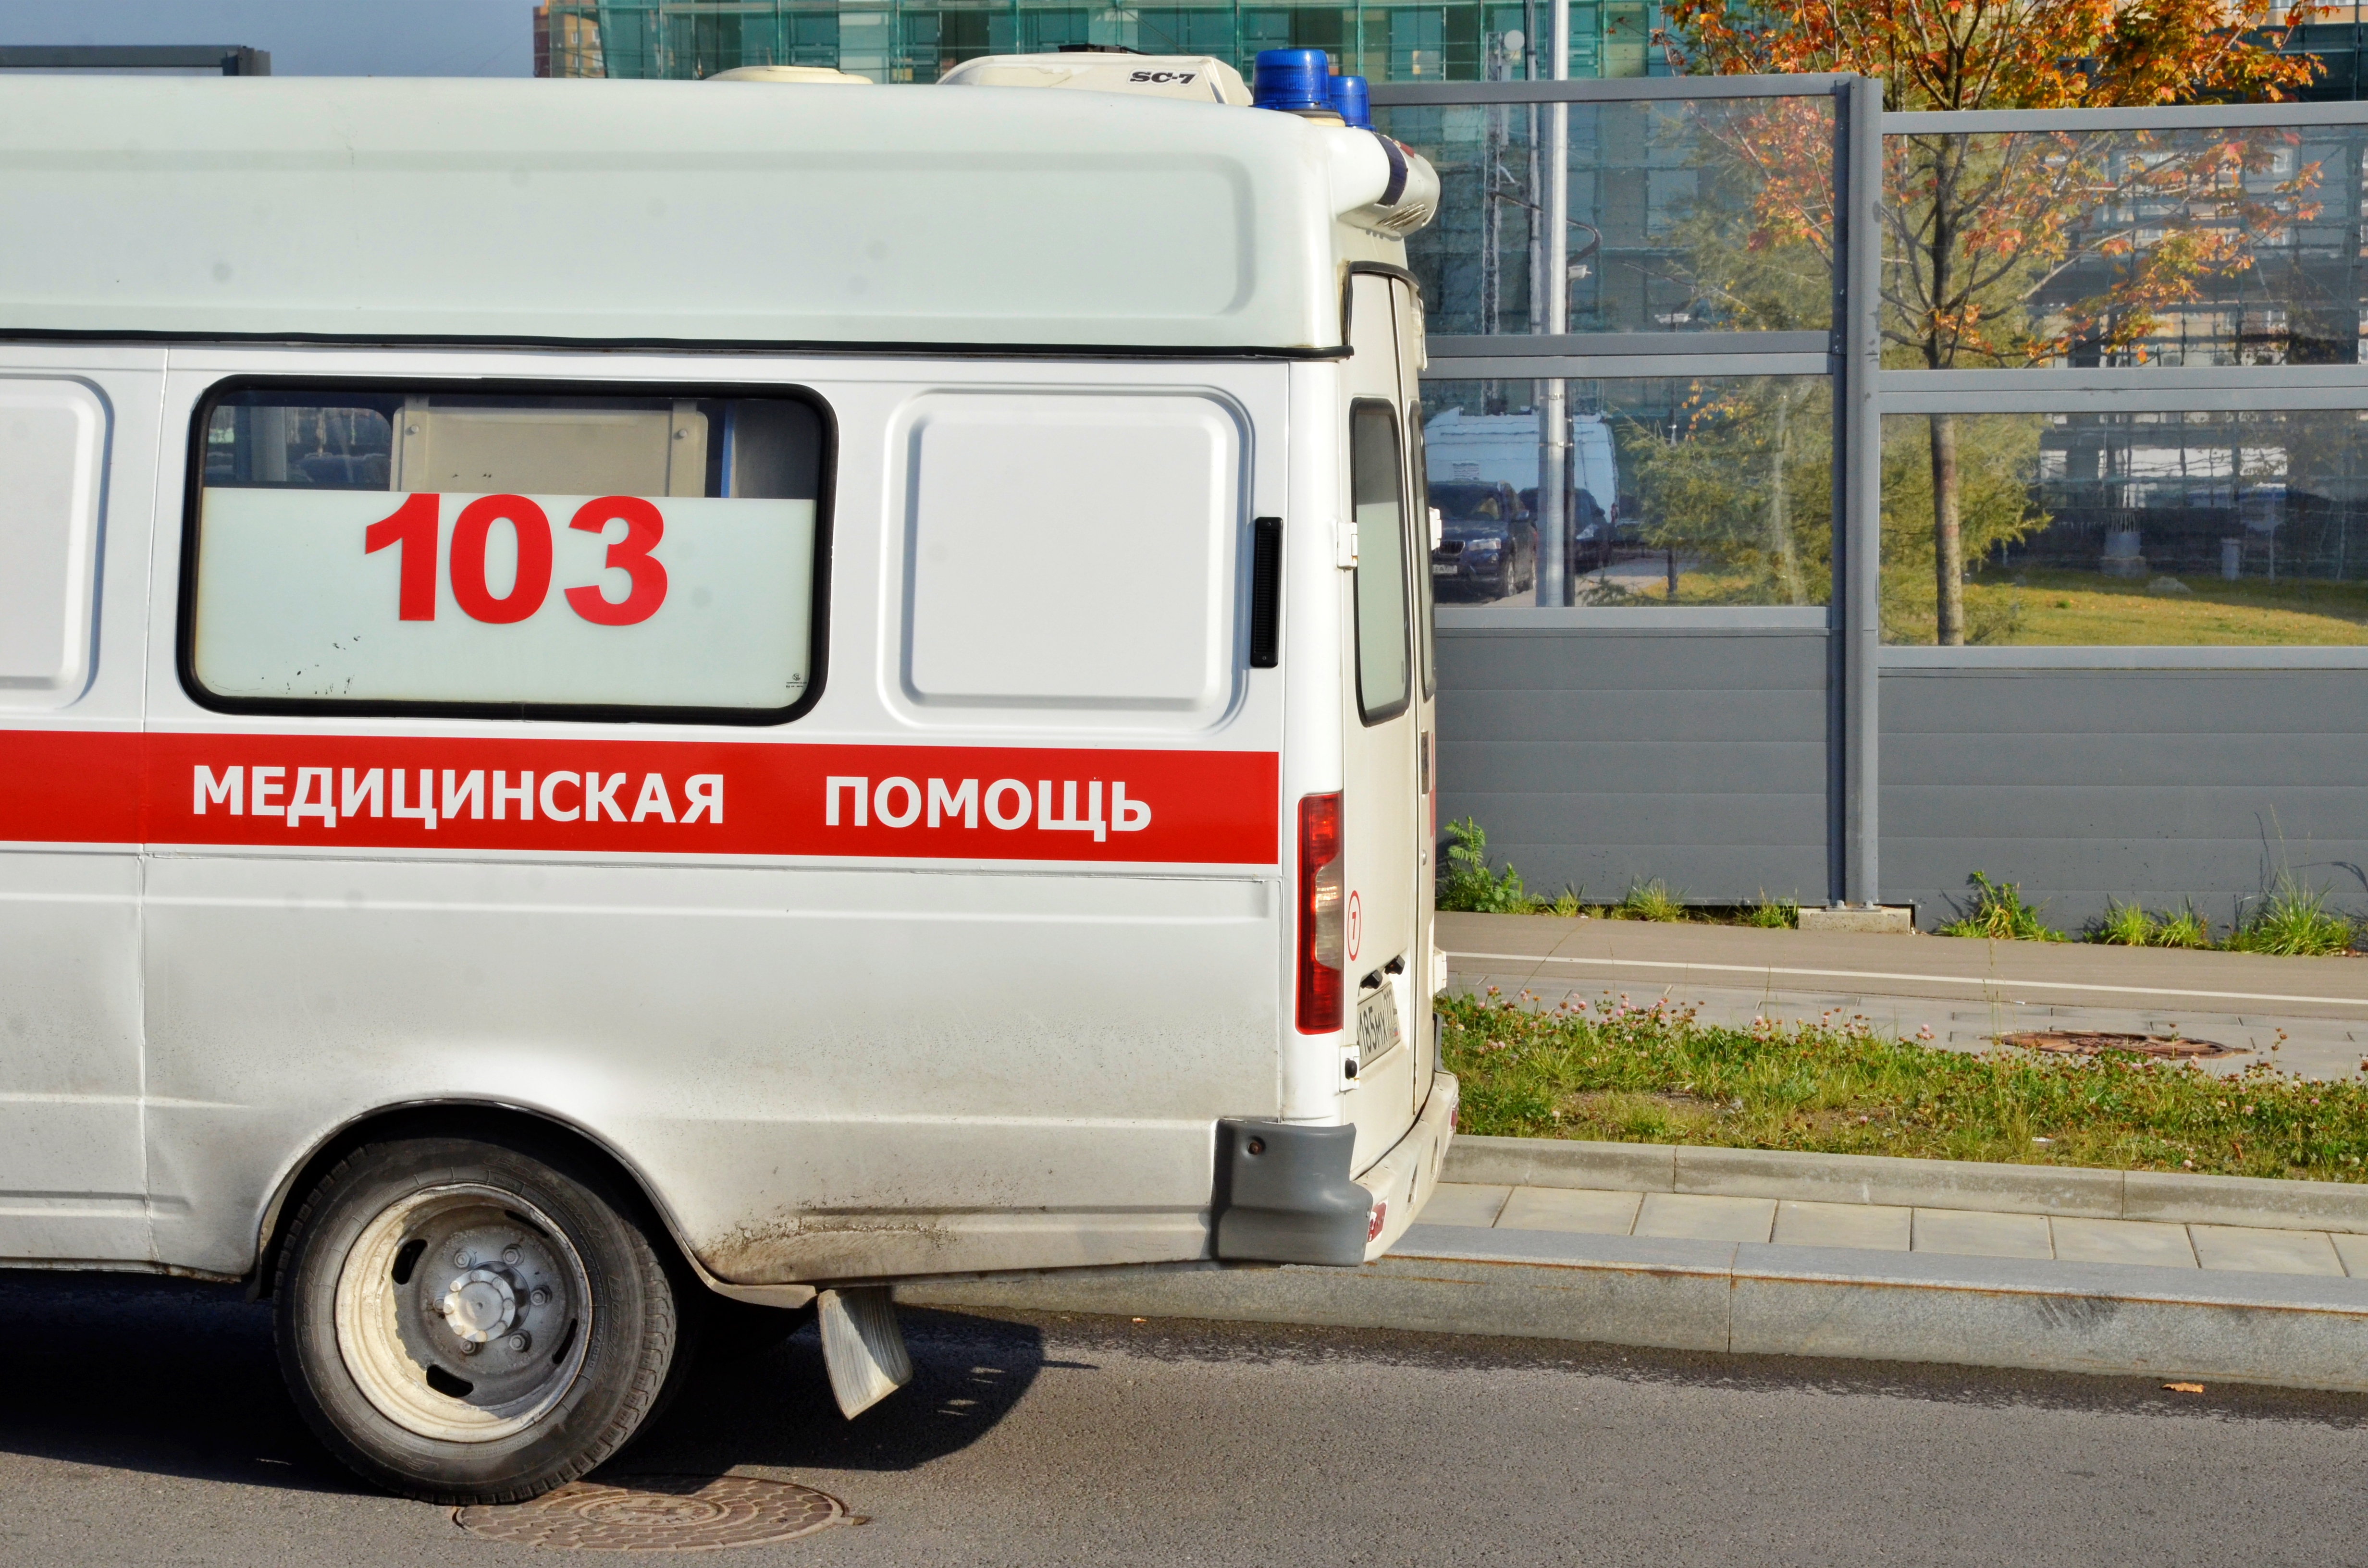 Московские врачи нашли более пяти тысяч носителей COVID-19 за сутки